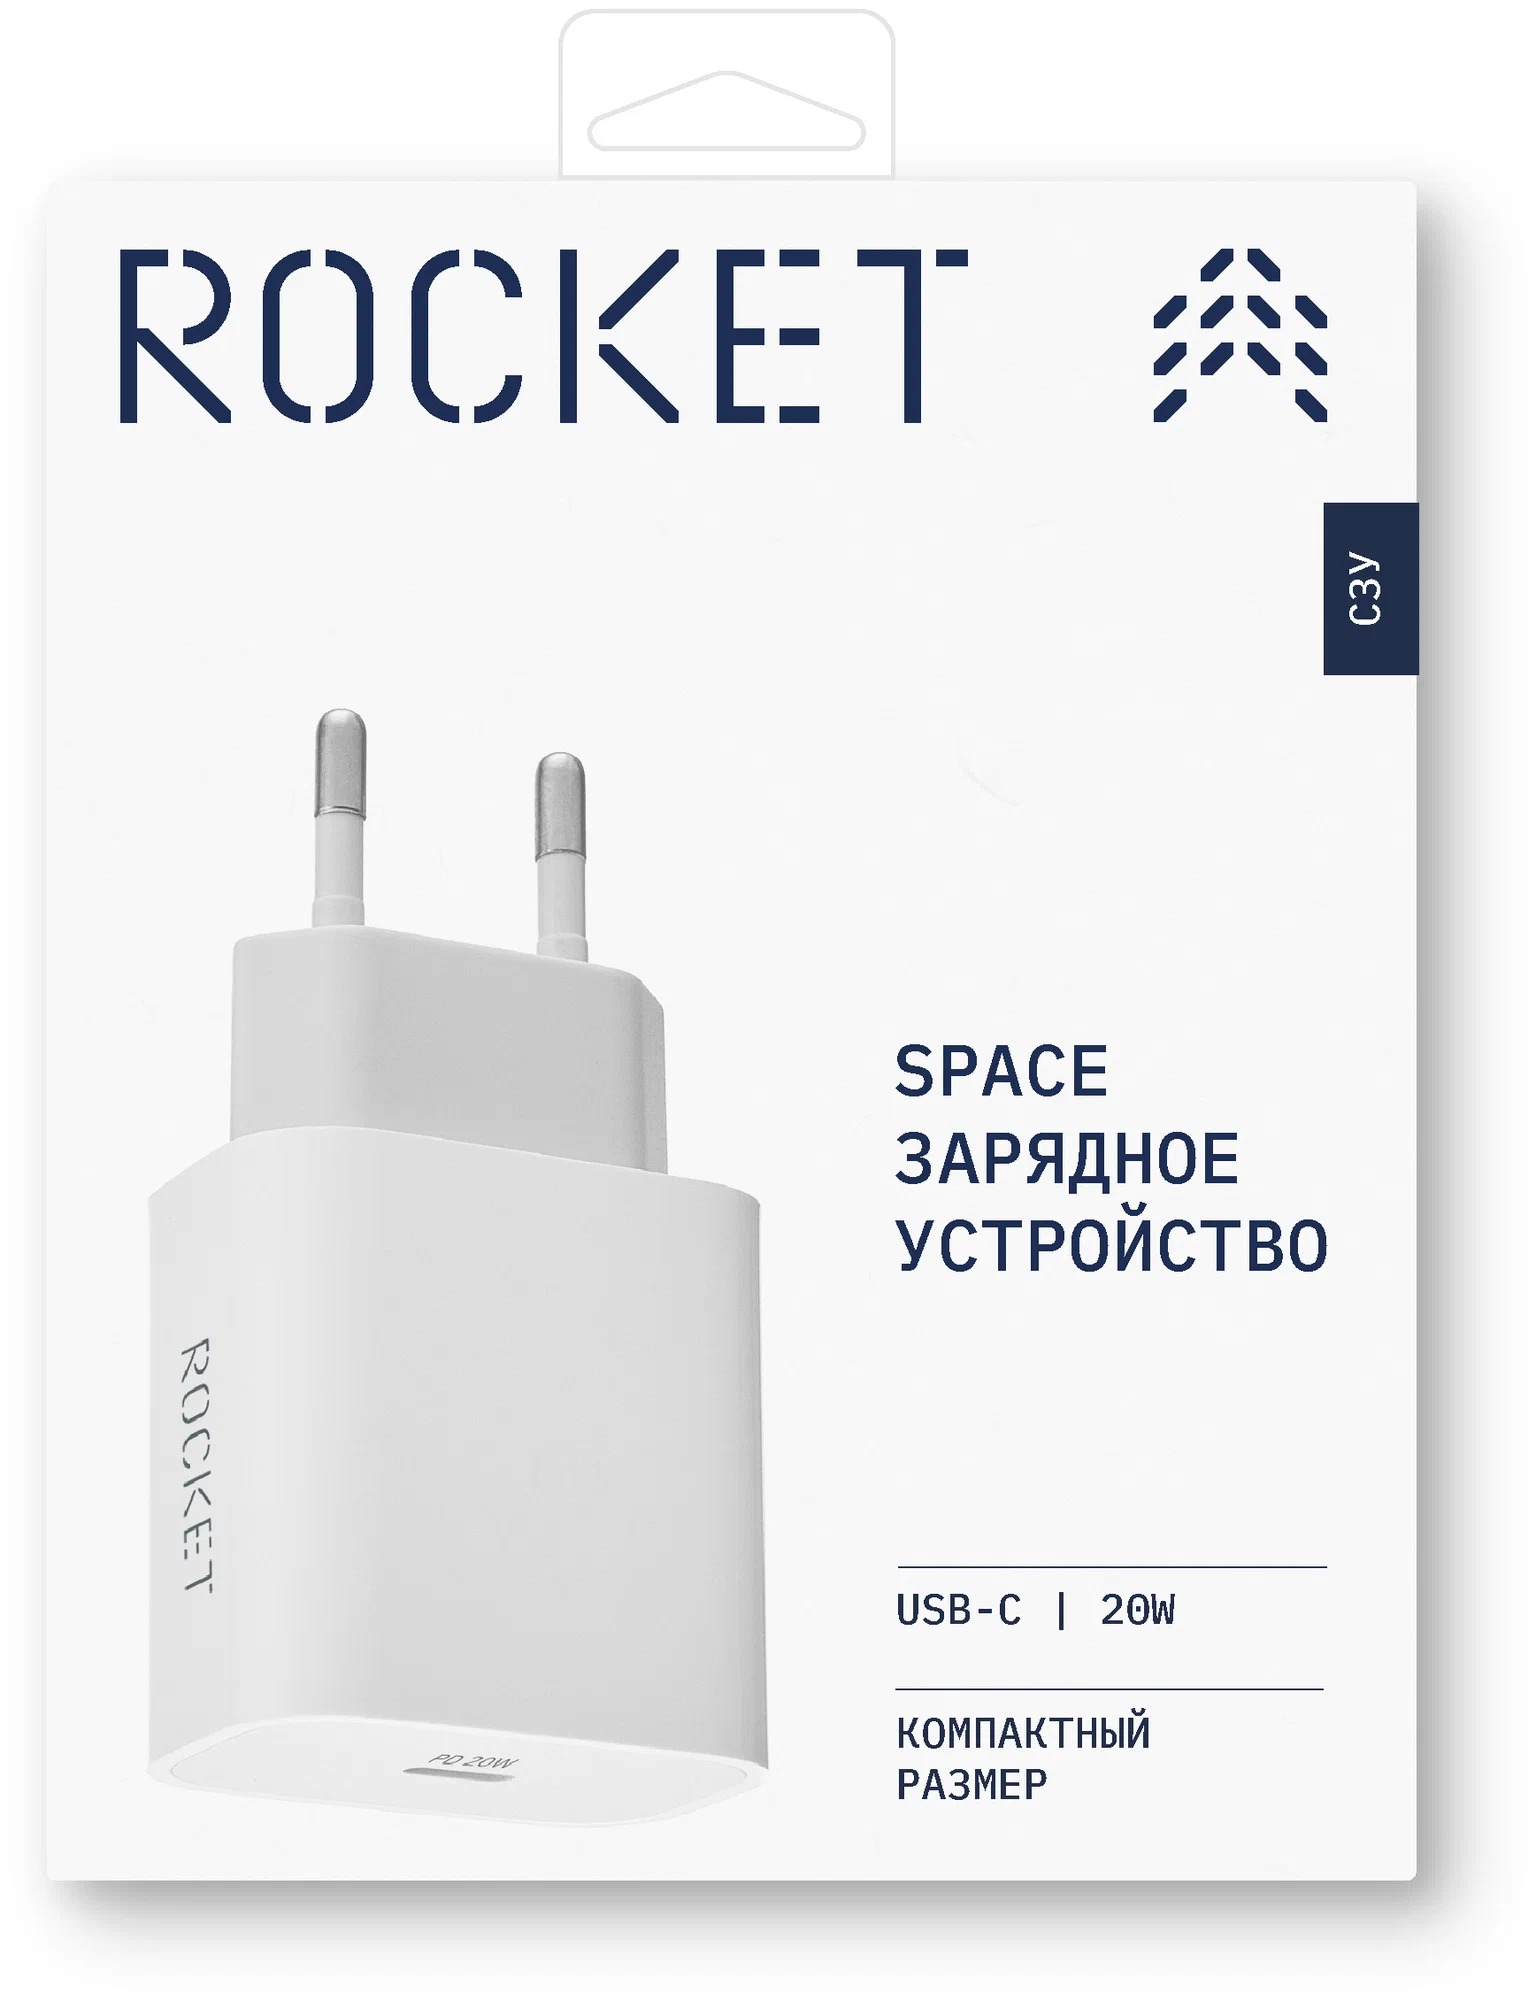 Сетевое зарядное устройство ROCKET Space 20W, USB-C, белый